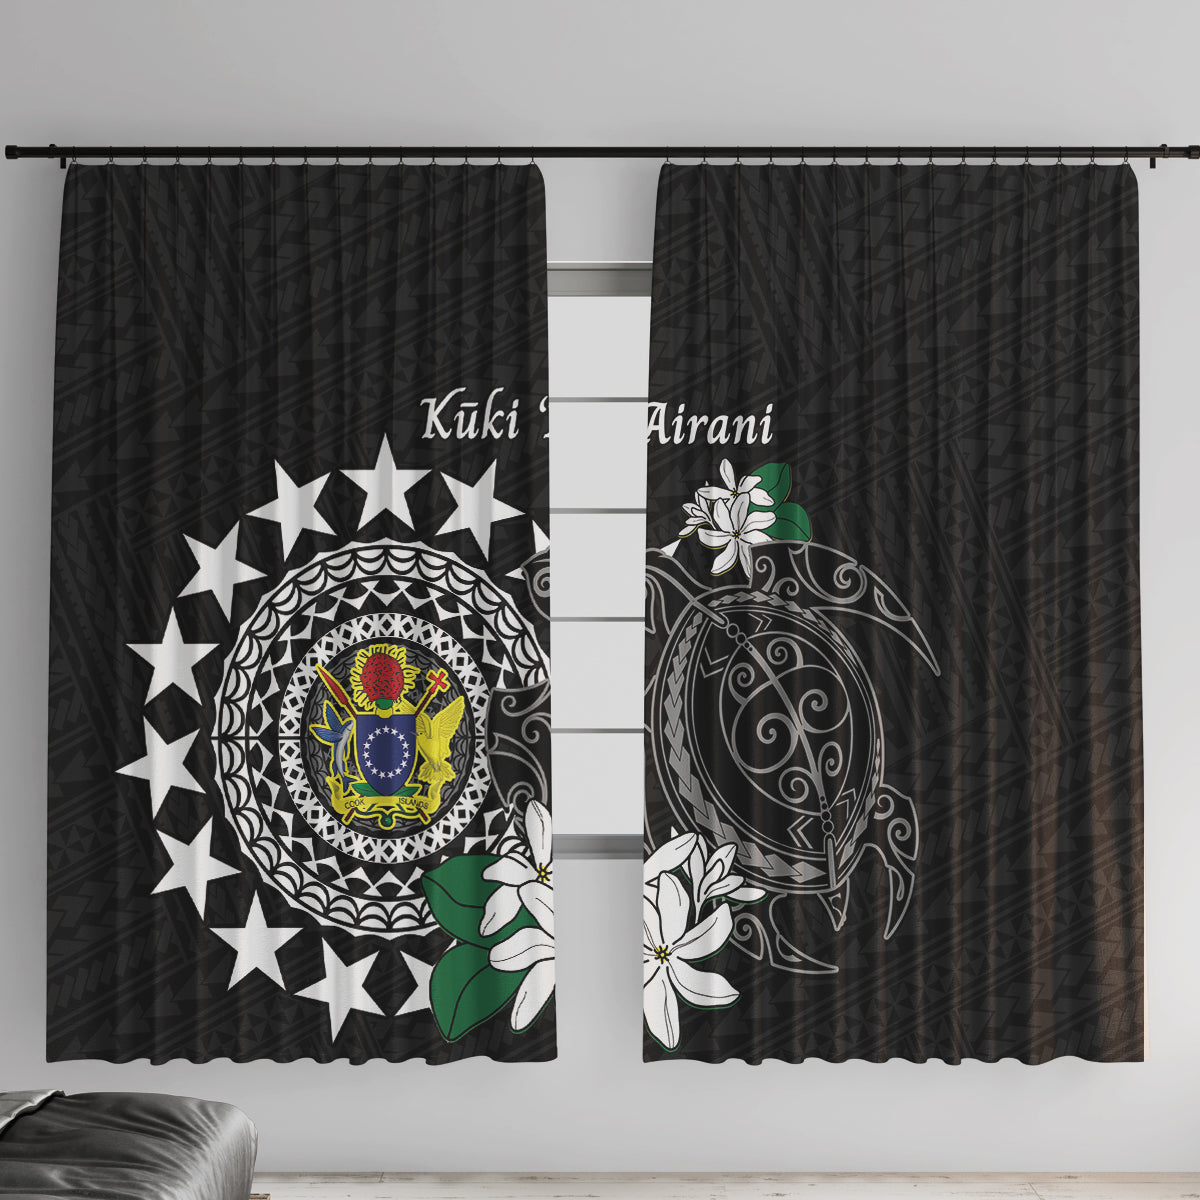 Cook Islands Independence Day Window Curtain Kuki Airani Tiare Maori Polynesian Pattern - Black